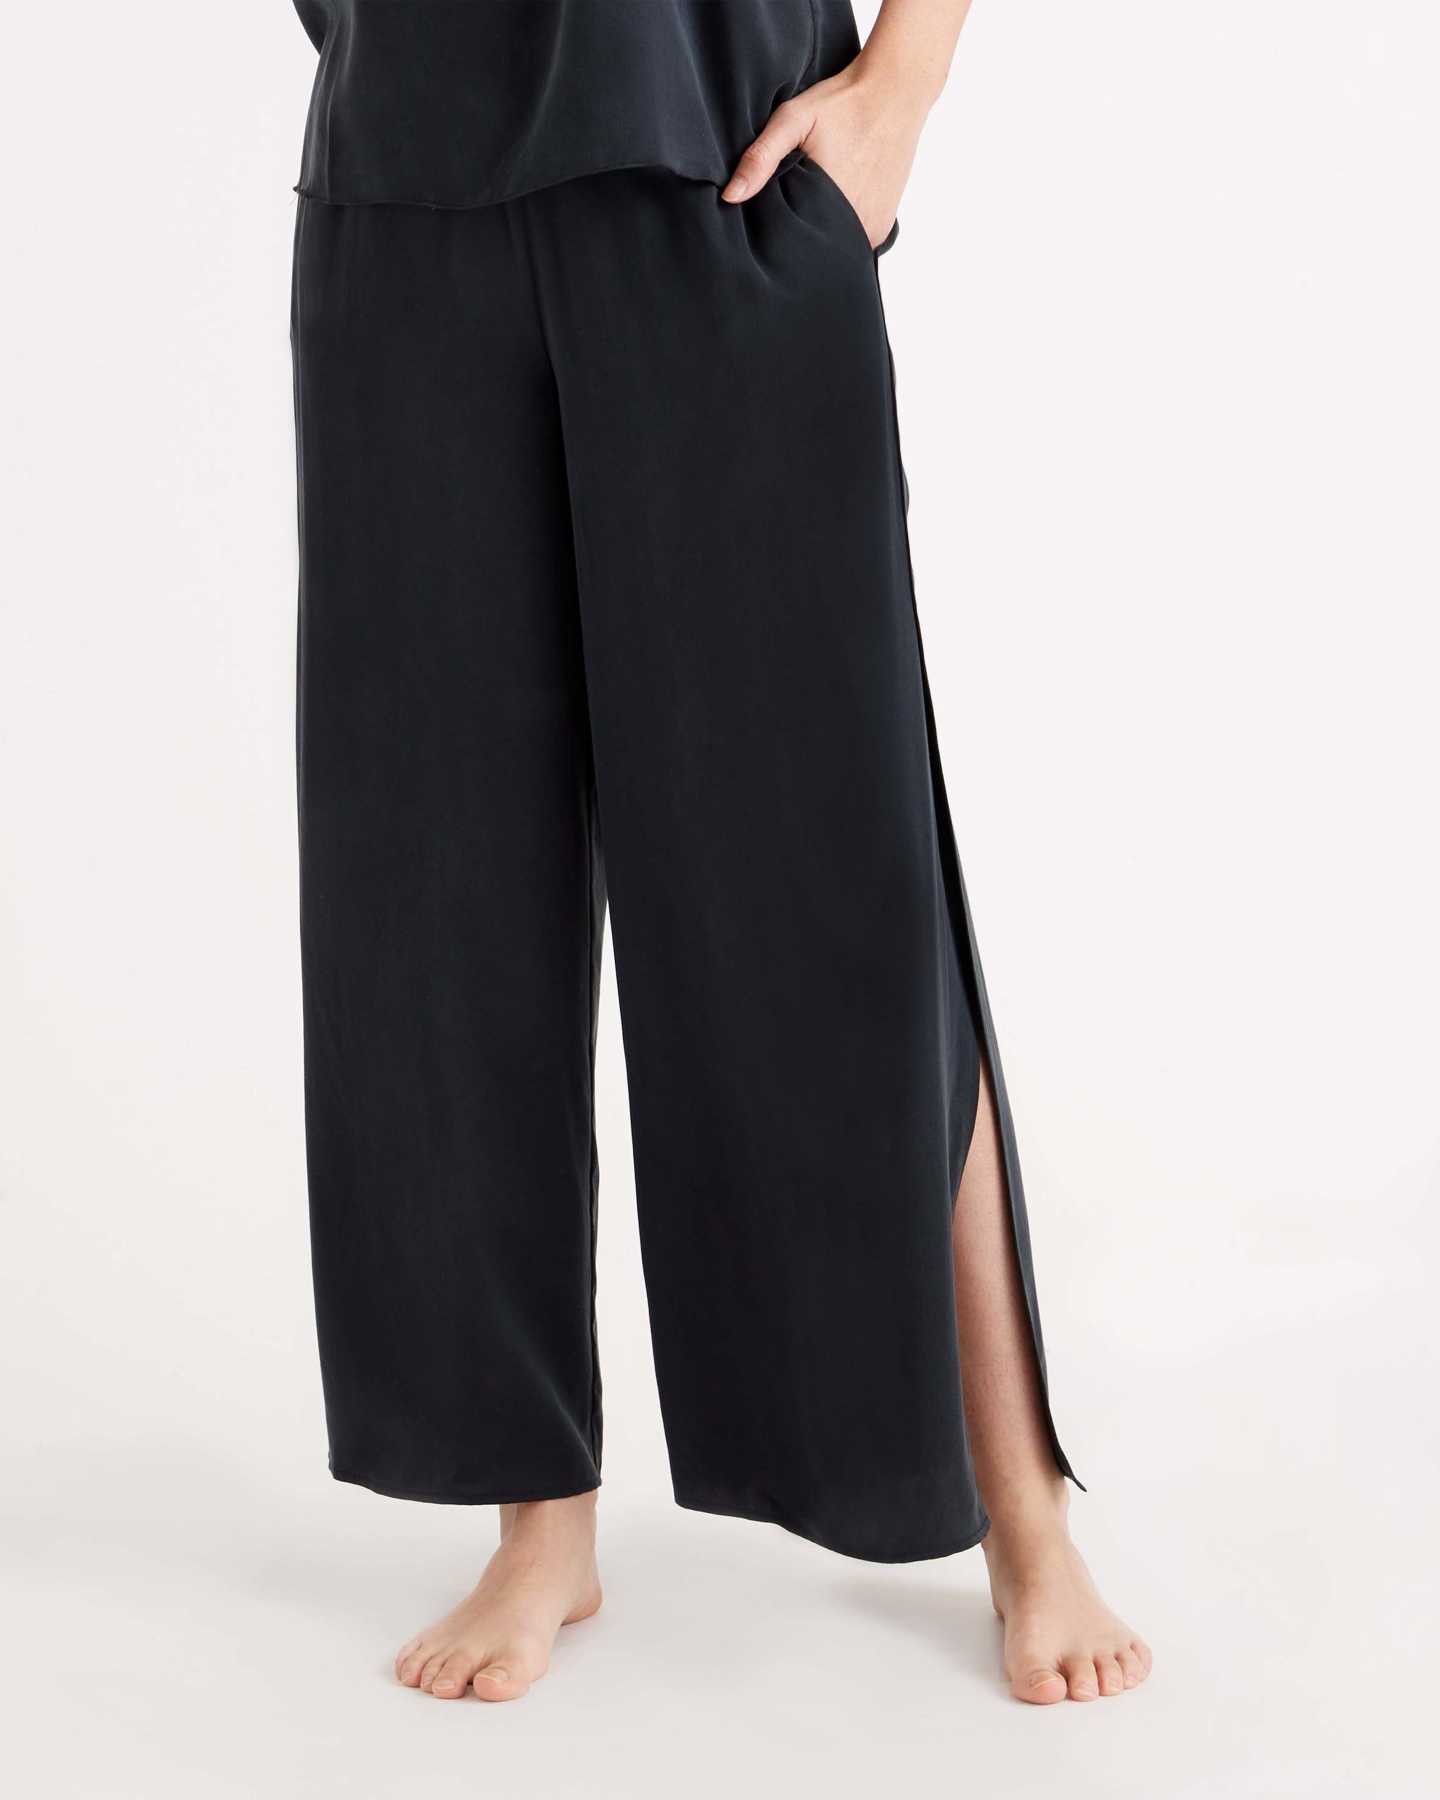 100% Washable Silk Pajama Pants - Black - 3